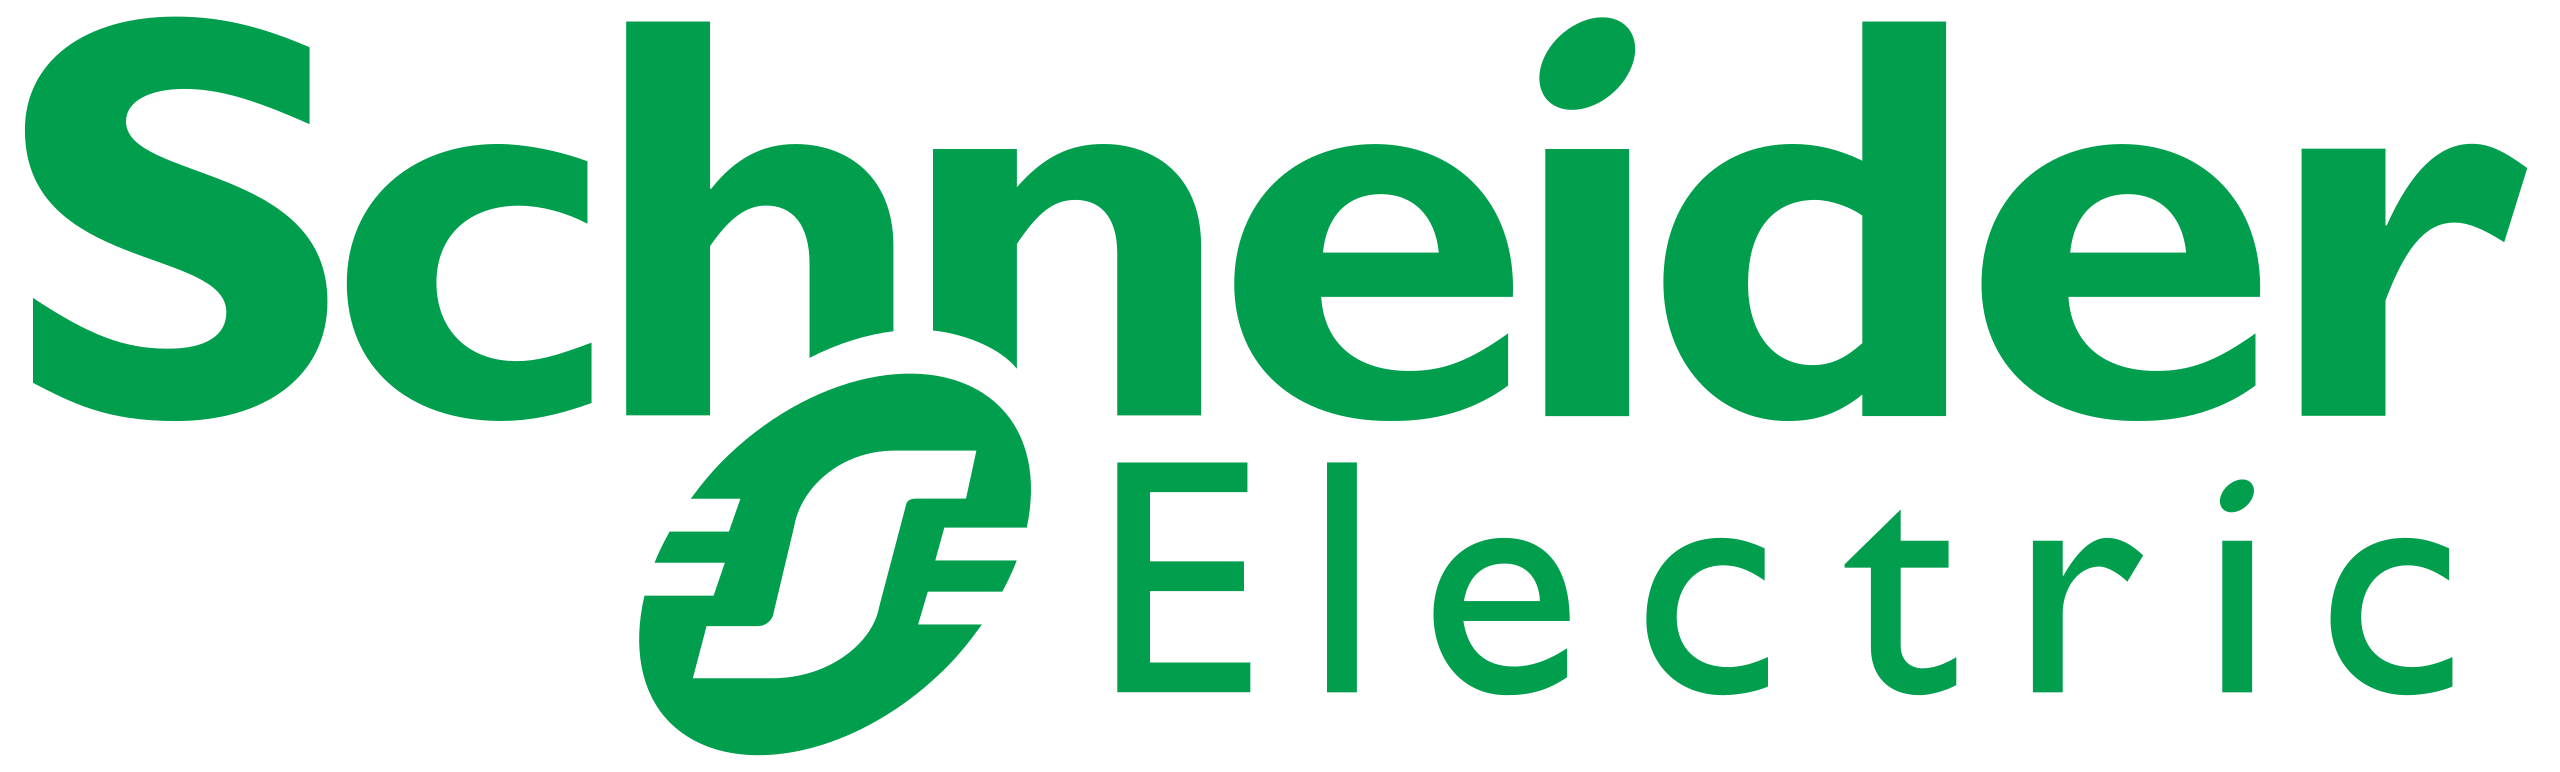 Schneider_Electric logo svg